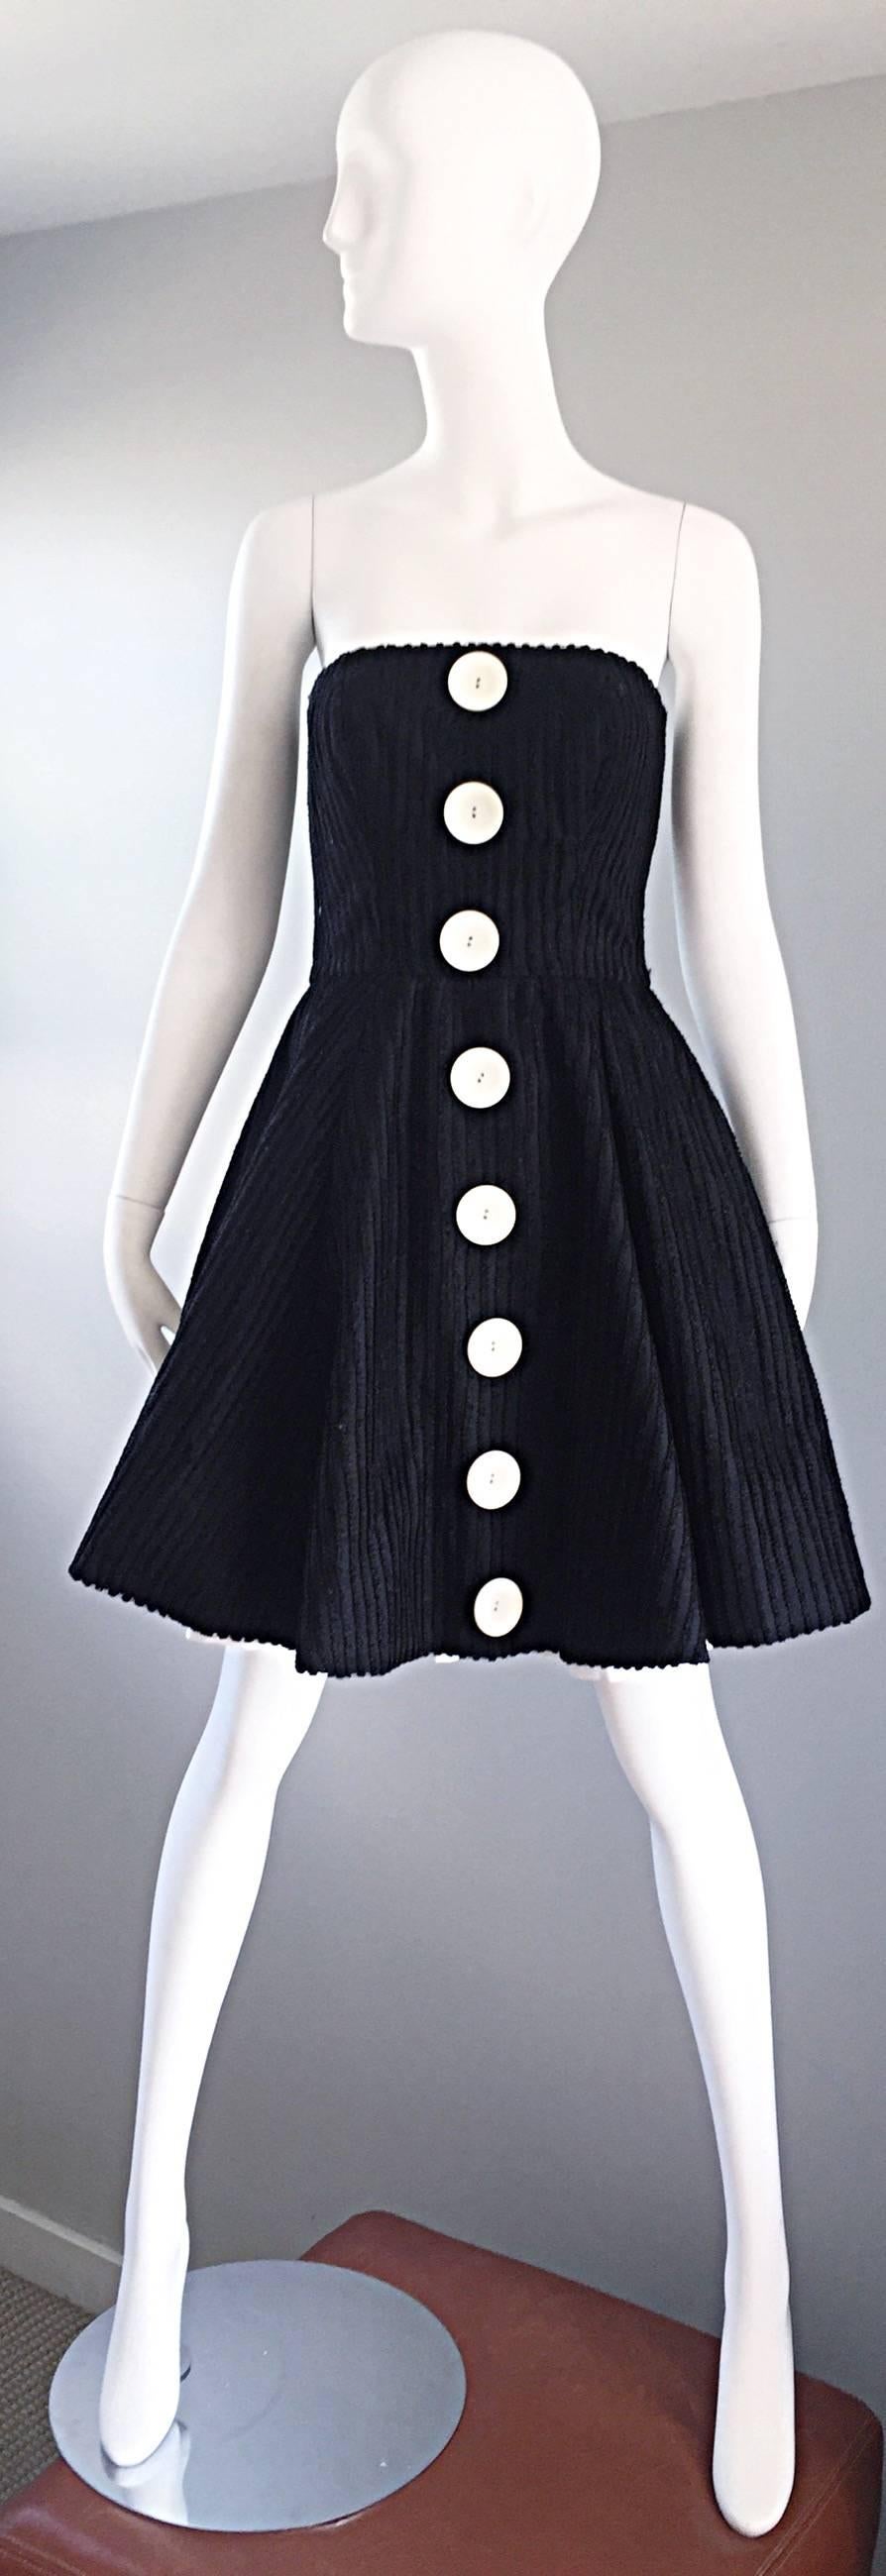 Sensationnelle robe vintage des années 1990 CHRISTIAN LACROIX Couture noir et blanc ! Il est recouvert d'un filet de soie et de coton noir. Cinq boutons fantaisie surdimensionnés sur le devant. Support intérieur intégré pour maintenir le tout en